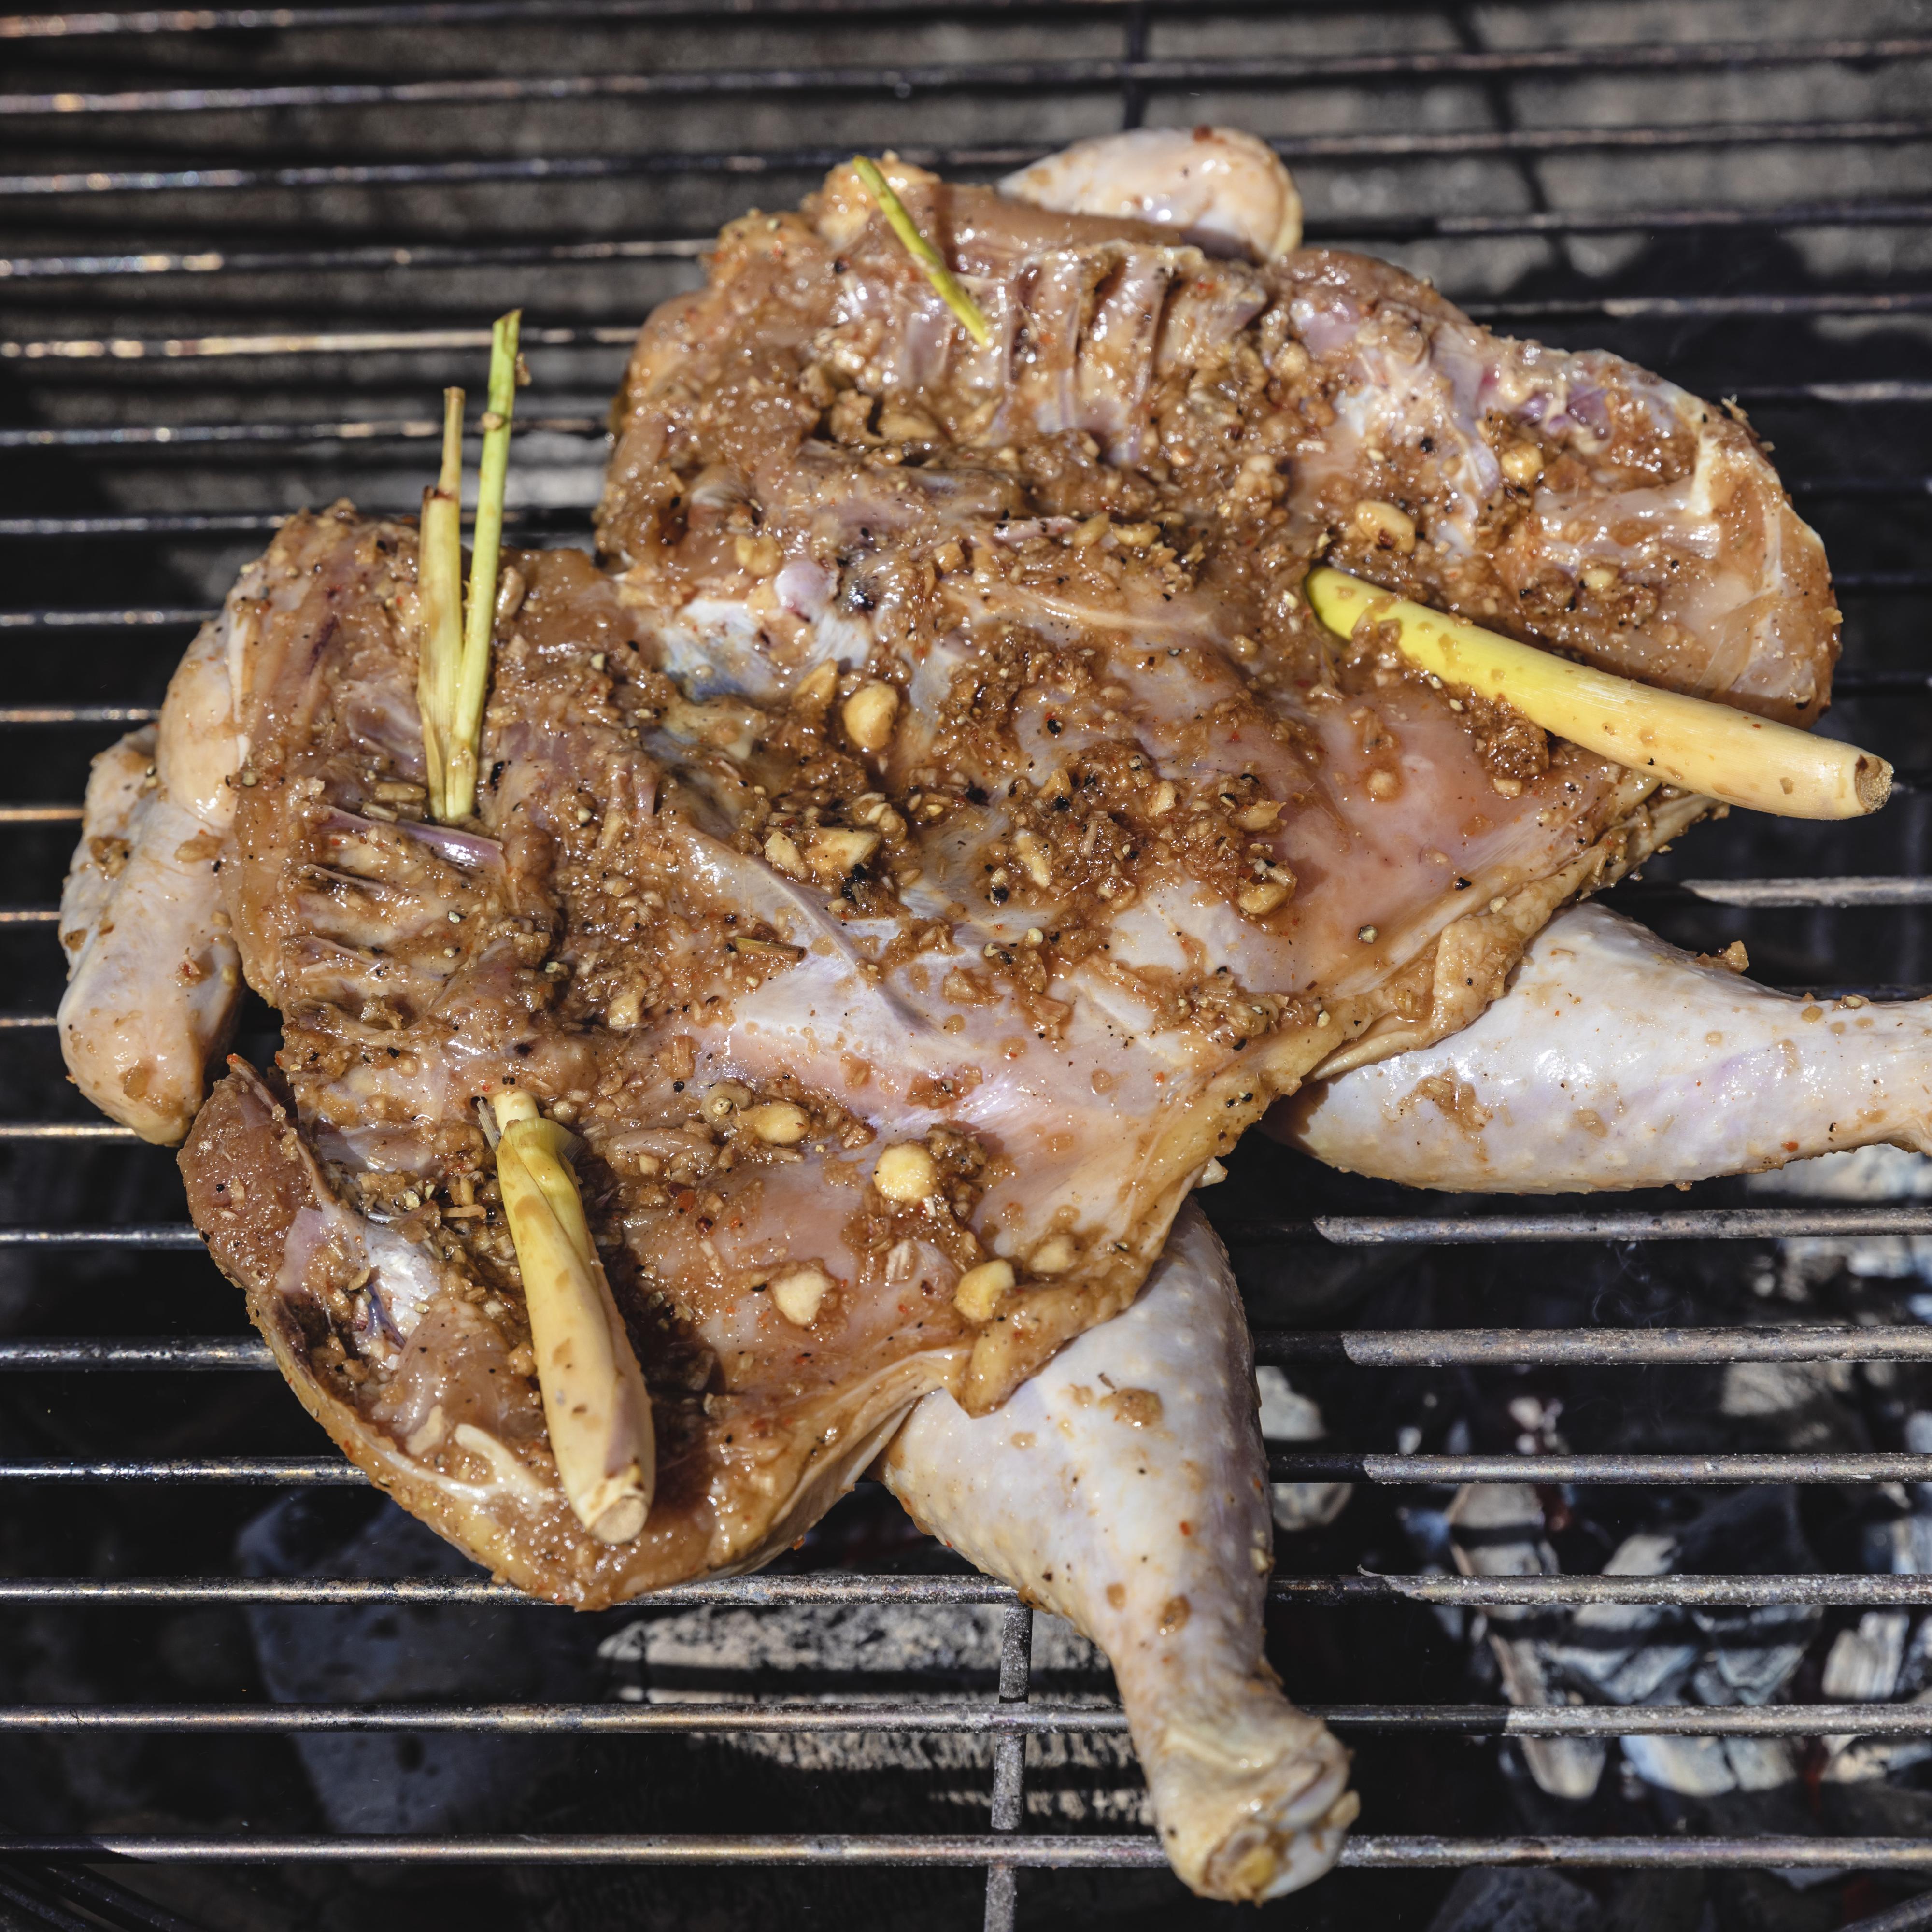 Fyr opp grillen og grill kyllingen over indirekte varme med brystet opp i 45-60 minutter, eller til skinnet er sprøtt og kyllingen er gjennomstekt. La kyllingen få hvile i 10-15 minutter før servering. 